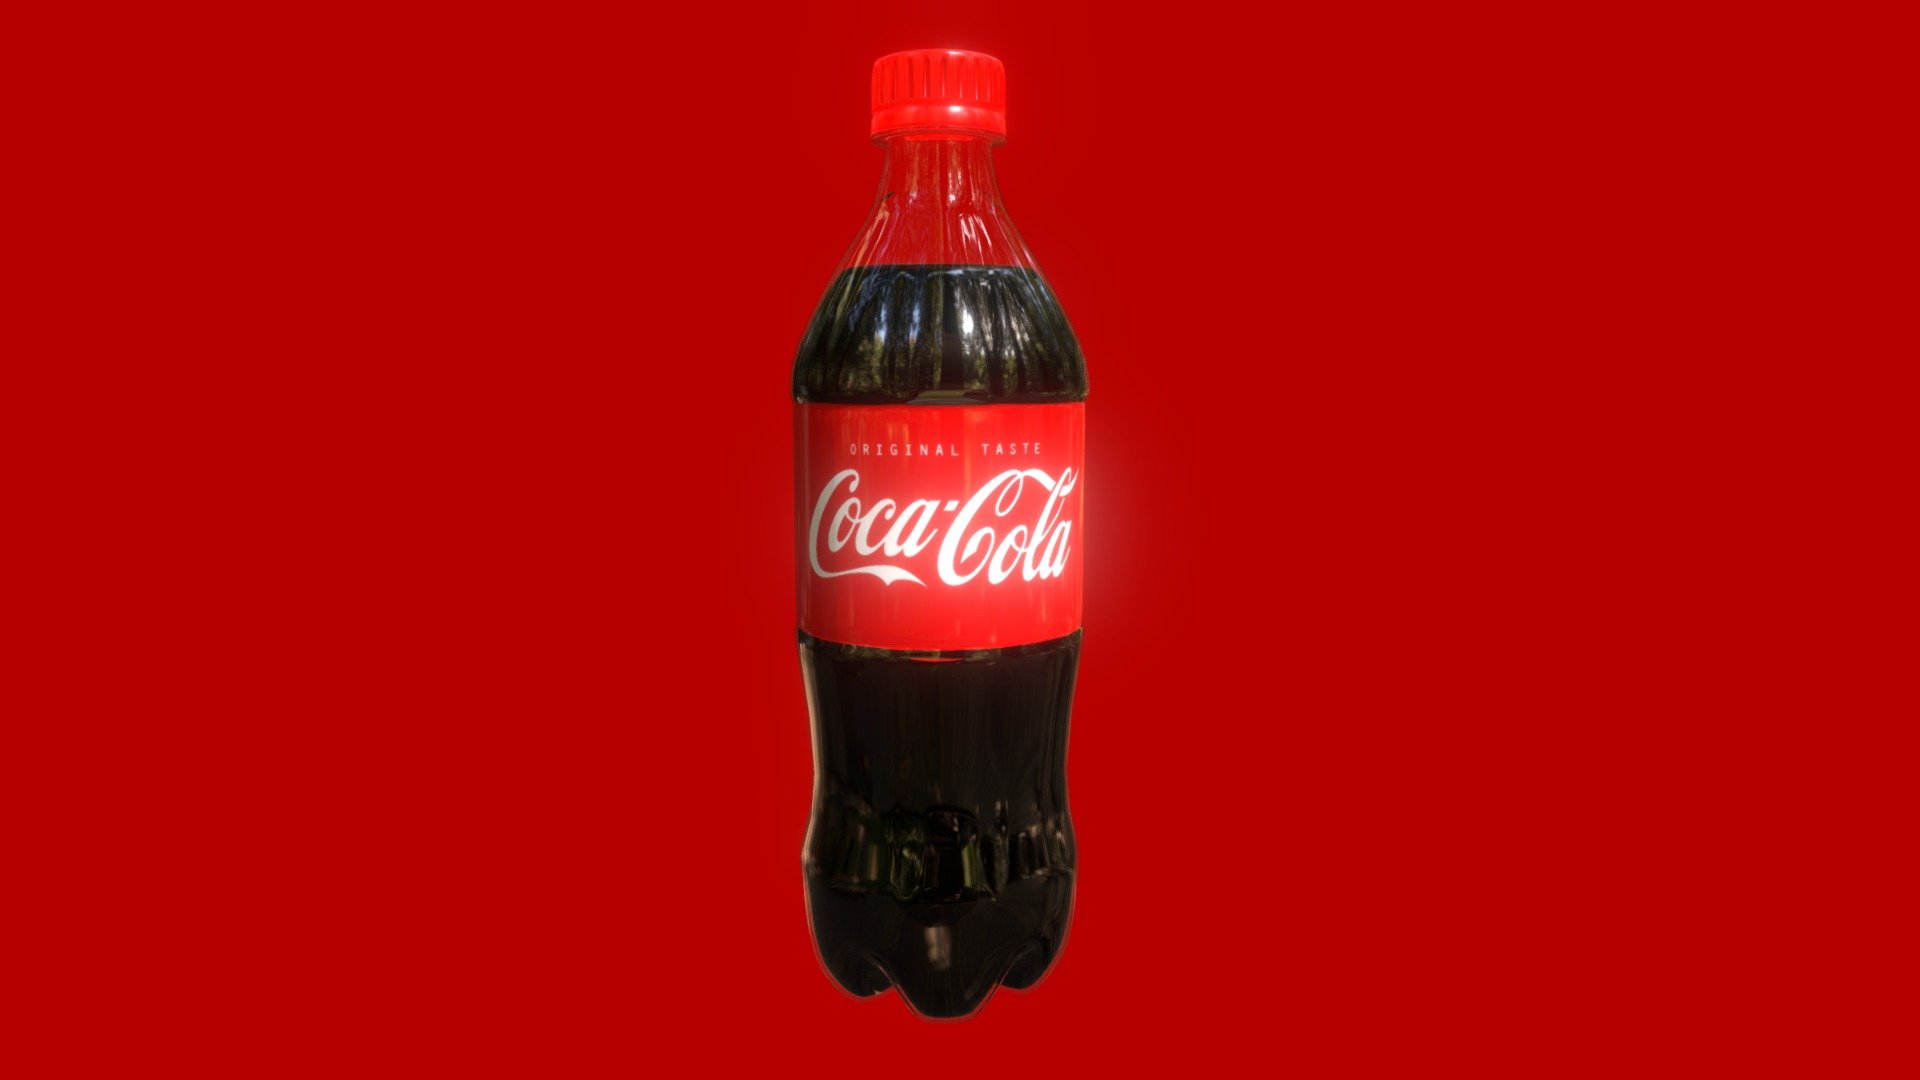 Coke bottle for packshot purposes. Great shape for gaming asset adaptation as well 3d model